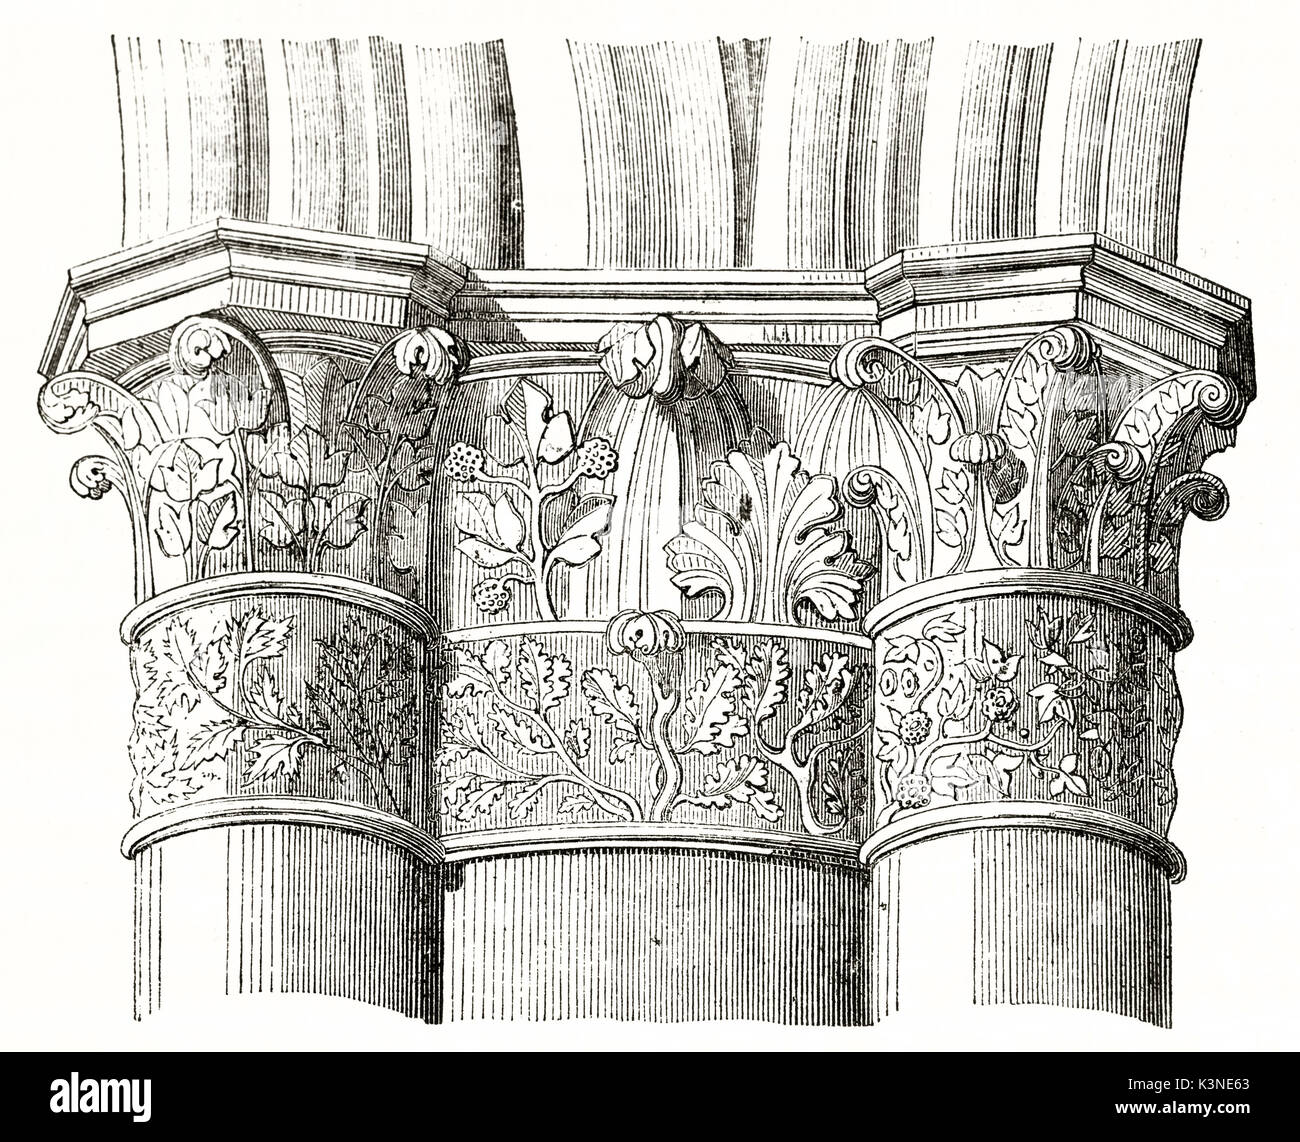 Architektonische Details der A-Säule Kapital in das Kirchenschiff der Kathedrale von Reims Frankreich. Isolierte Element auf weißem Hintergrund, die durch unbekannte Autor auf Magasin Pittoresque Paris 1839 veröffentlicht. Stockfoto